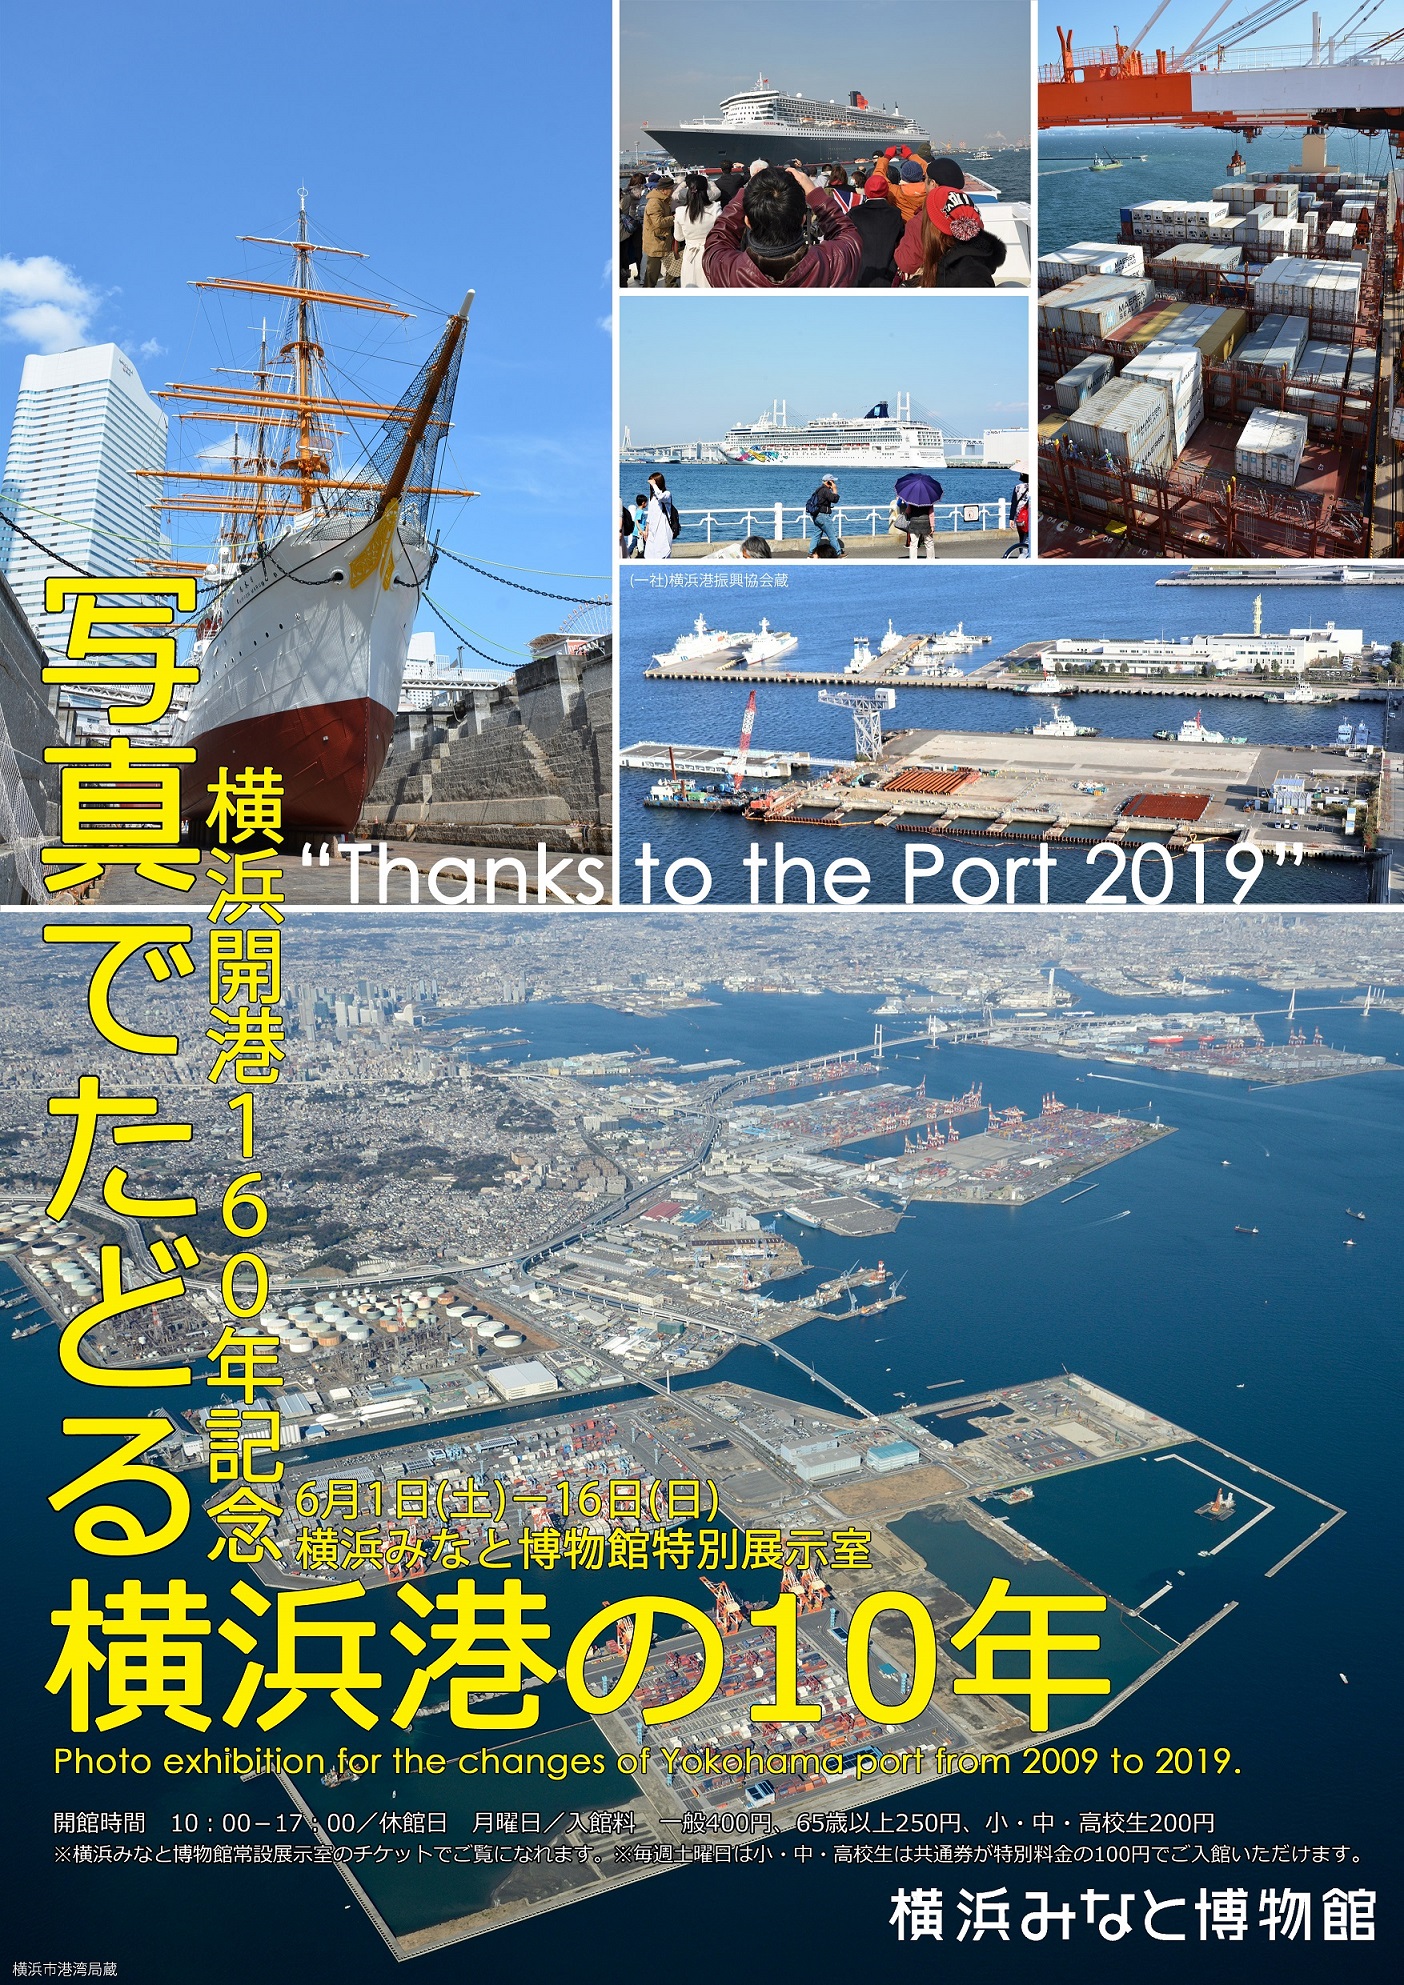 横浜開港160周年記念展示 写真でたどる横浜港の10年 帆船日本丸 横浜みなと博物館